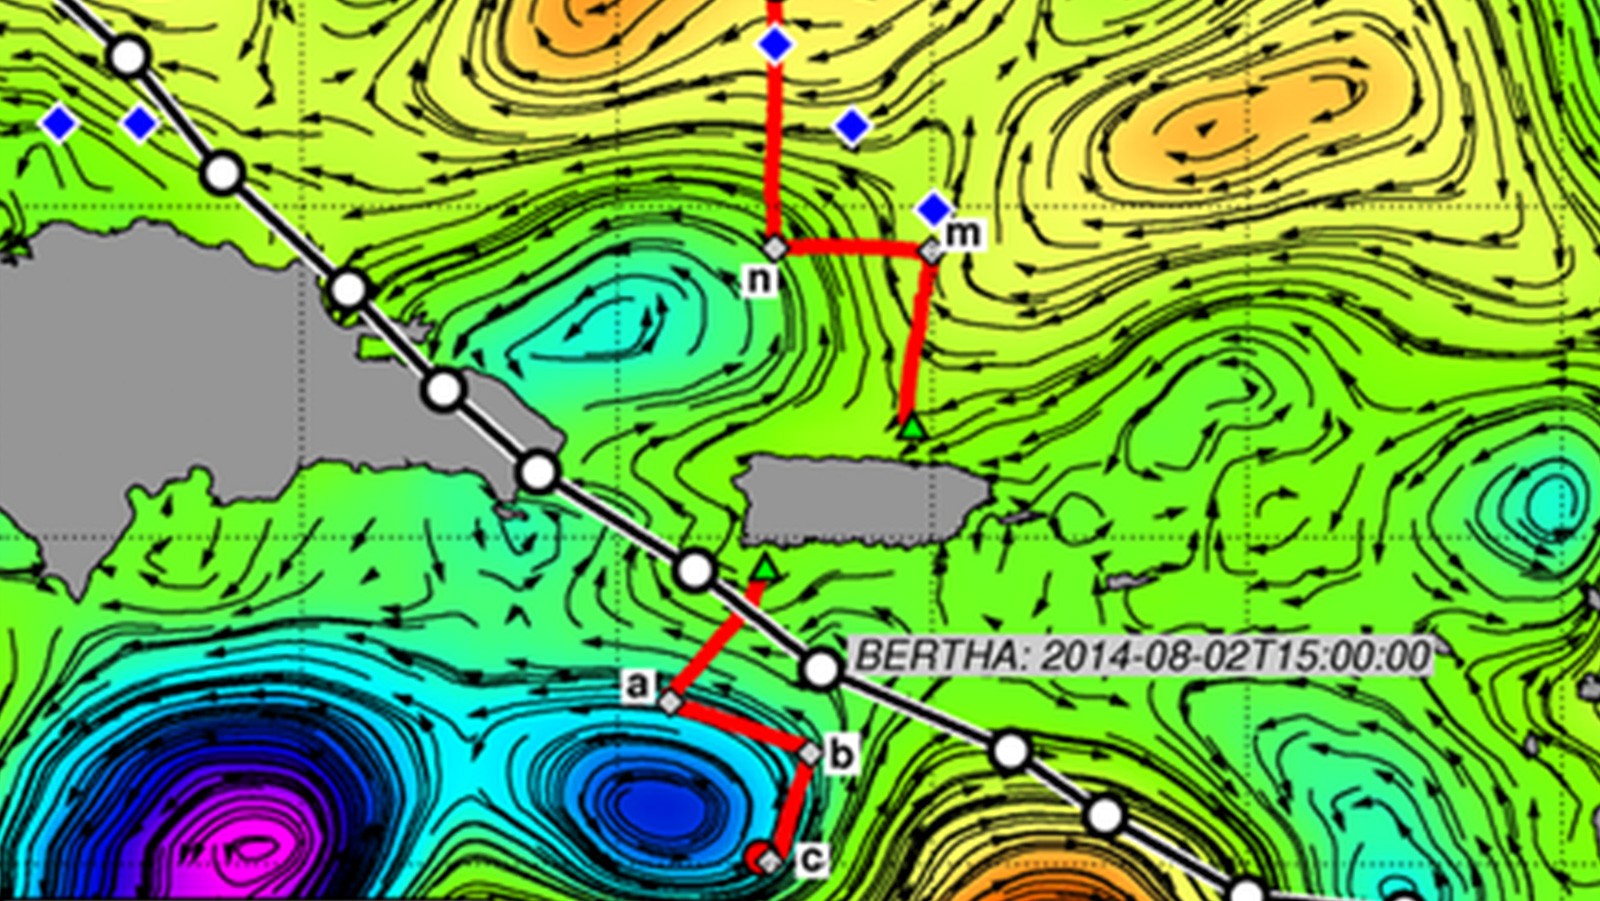 Figura. Huellas de dos planeadores submarinos AOML (líneas rojas) desplegados a mediados de julio, huellas de la tormenta tropical Bertha (línea negra, círculos cada 3hs), y despliegues de la NOAA AXBT (diamantes azules), superpuestas a la altura de la superficie del mar derivada de la altimetría (SSH) y a las corrientes geotróficas (flechas).